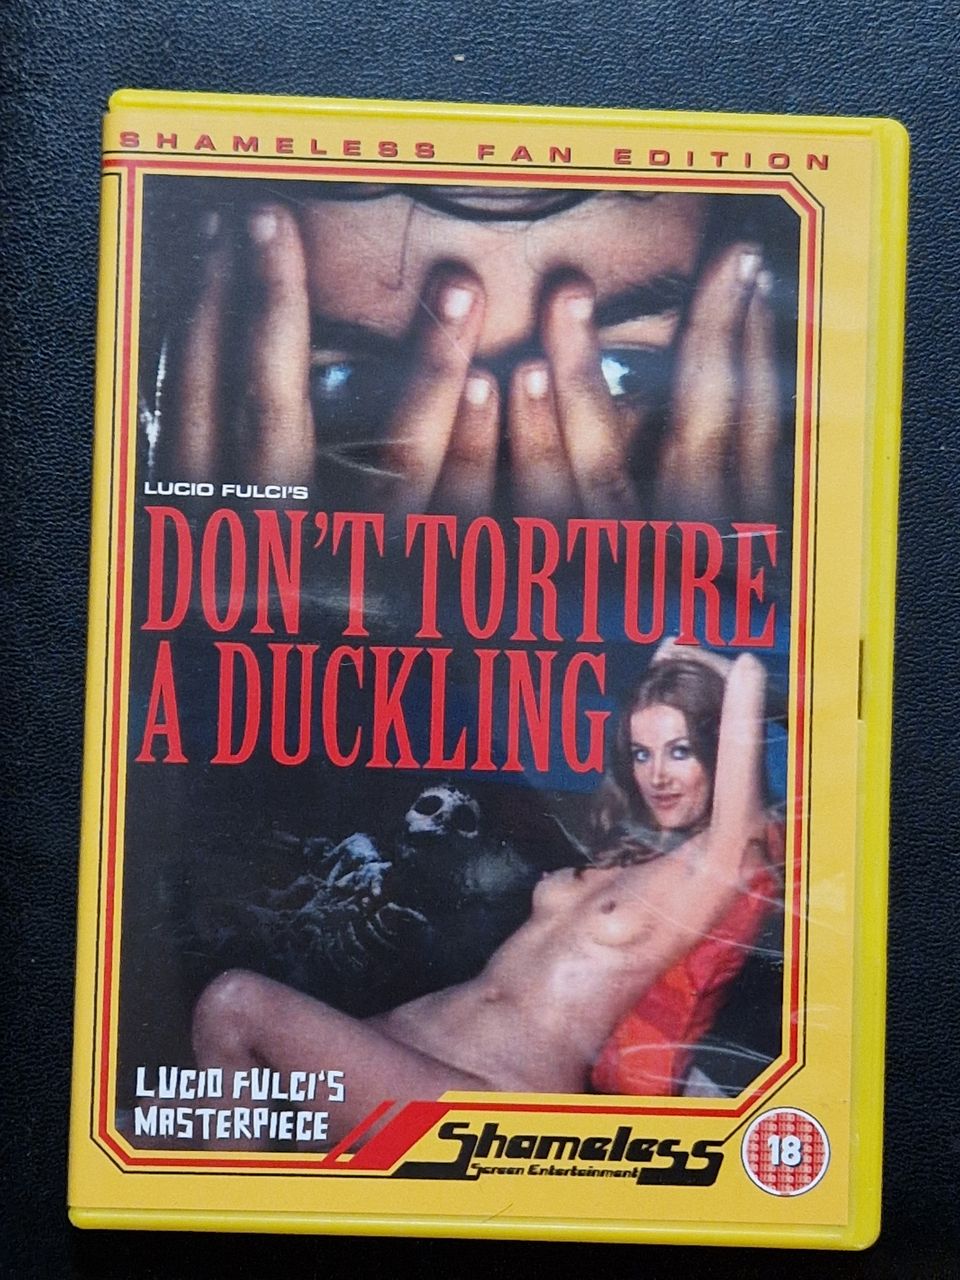 Don't Torture the Duckling - Shameless DVD